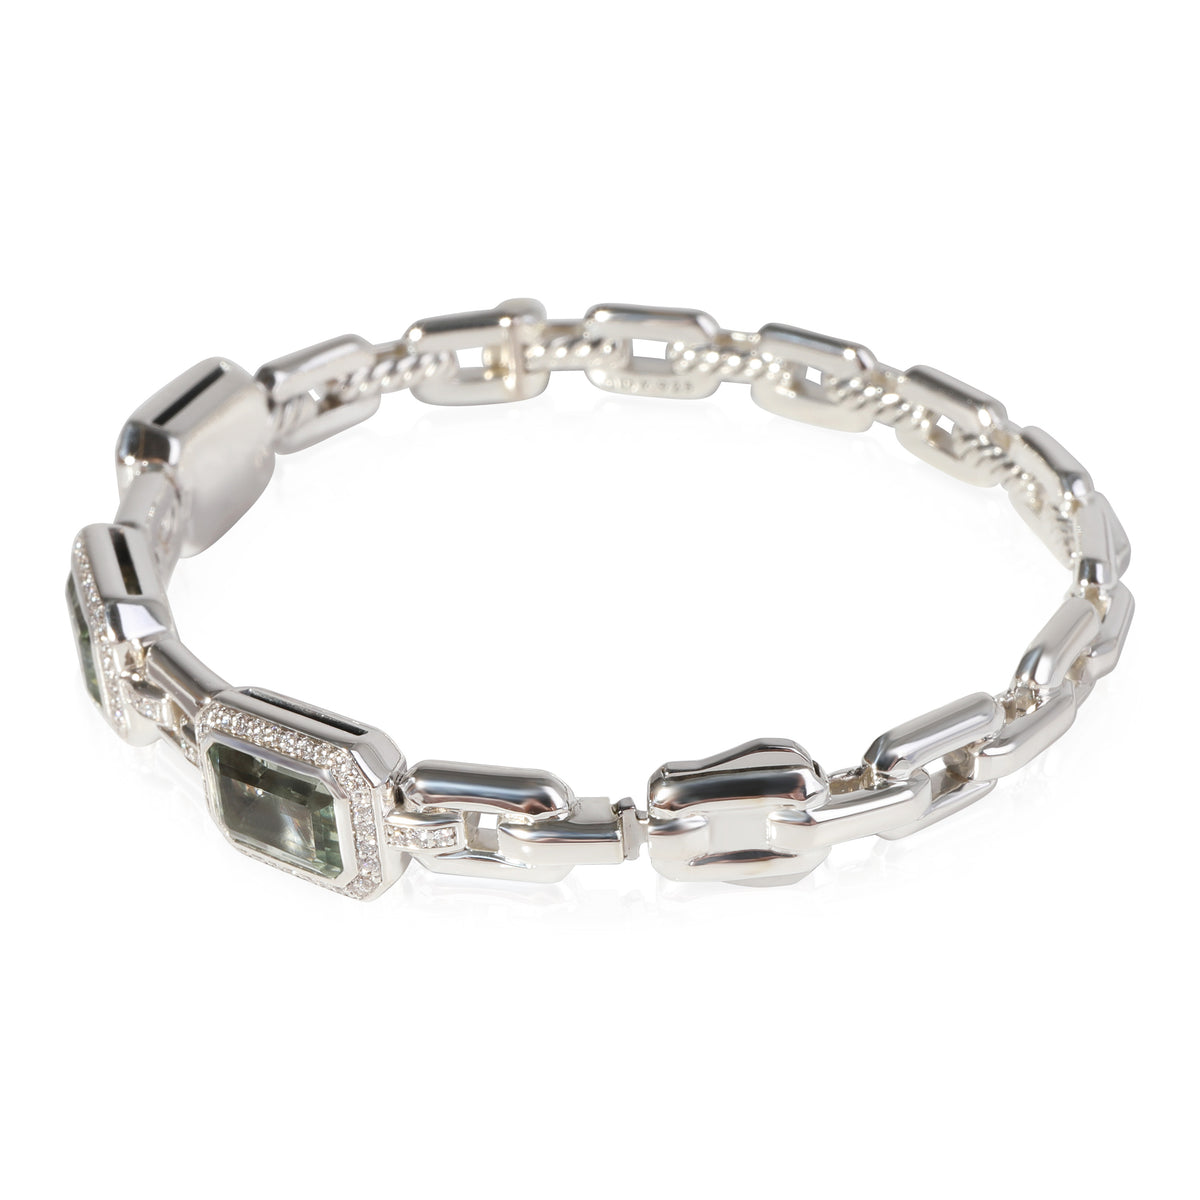 David Yurman Novella Prasiolite Diamond Bracelet in Sterling Silver 0.45 CTW